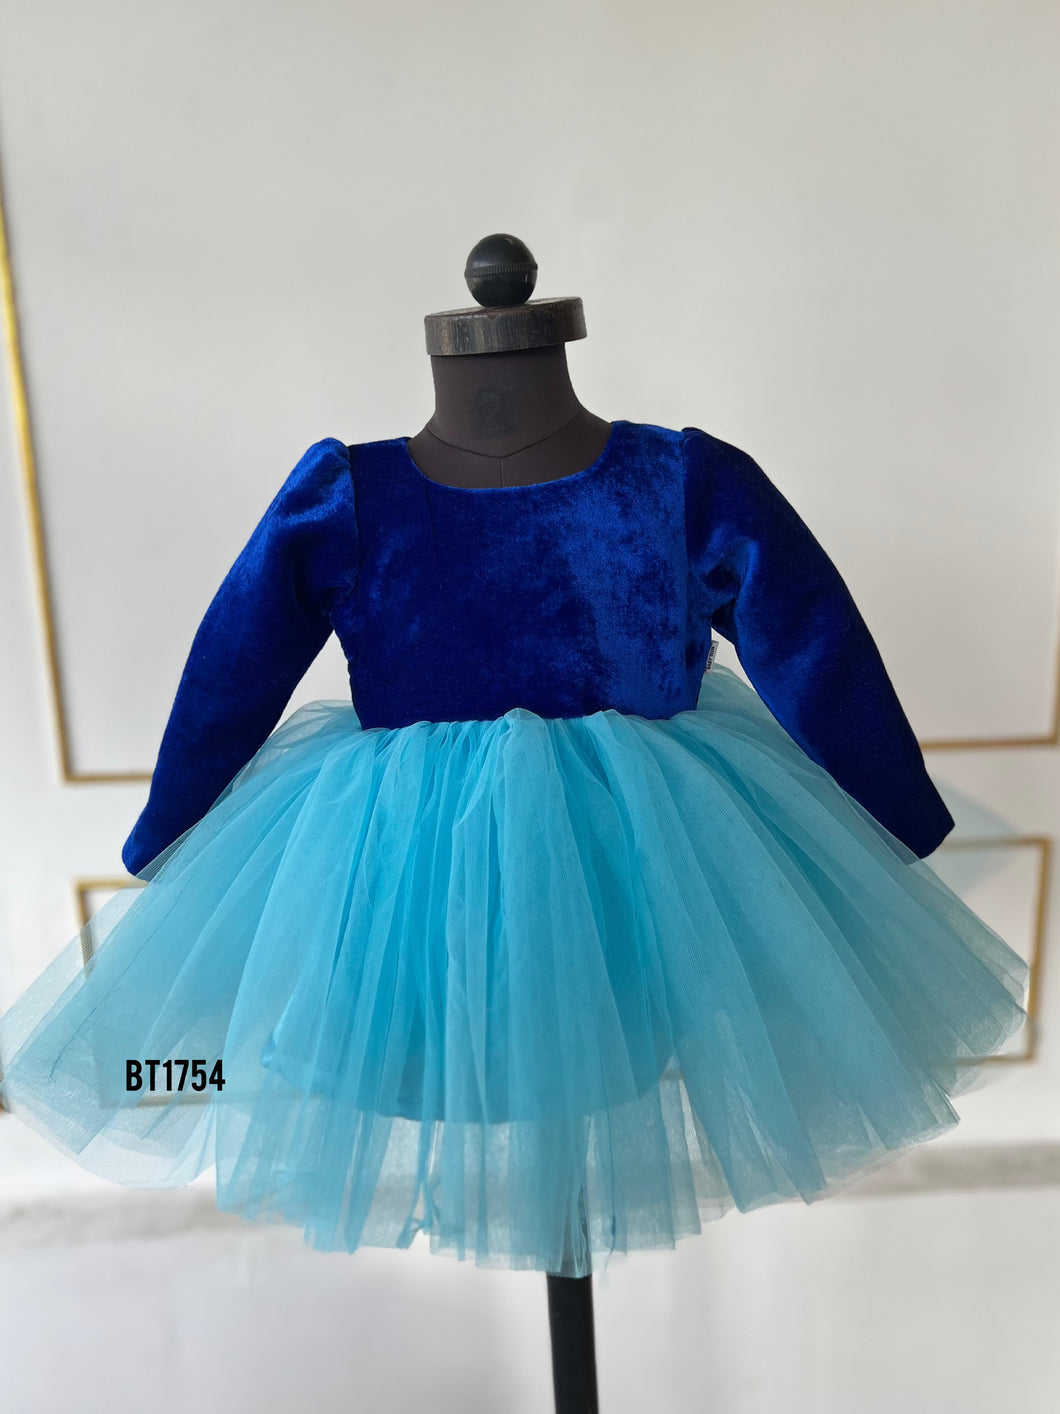 BT1754 Royal Velvet & Whisper Tulle Dress for Tiny Fashionistas